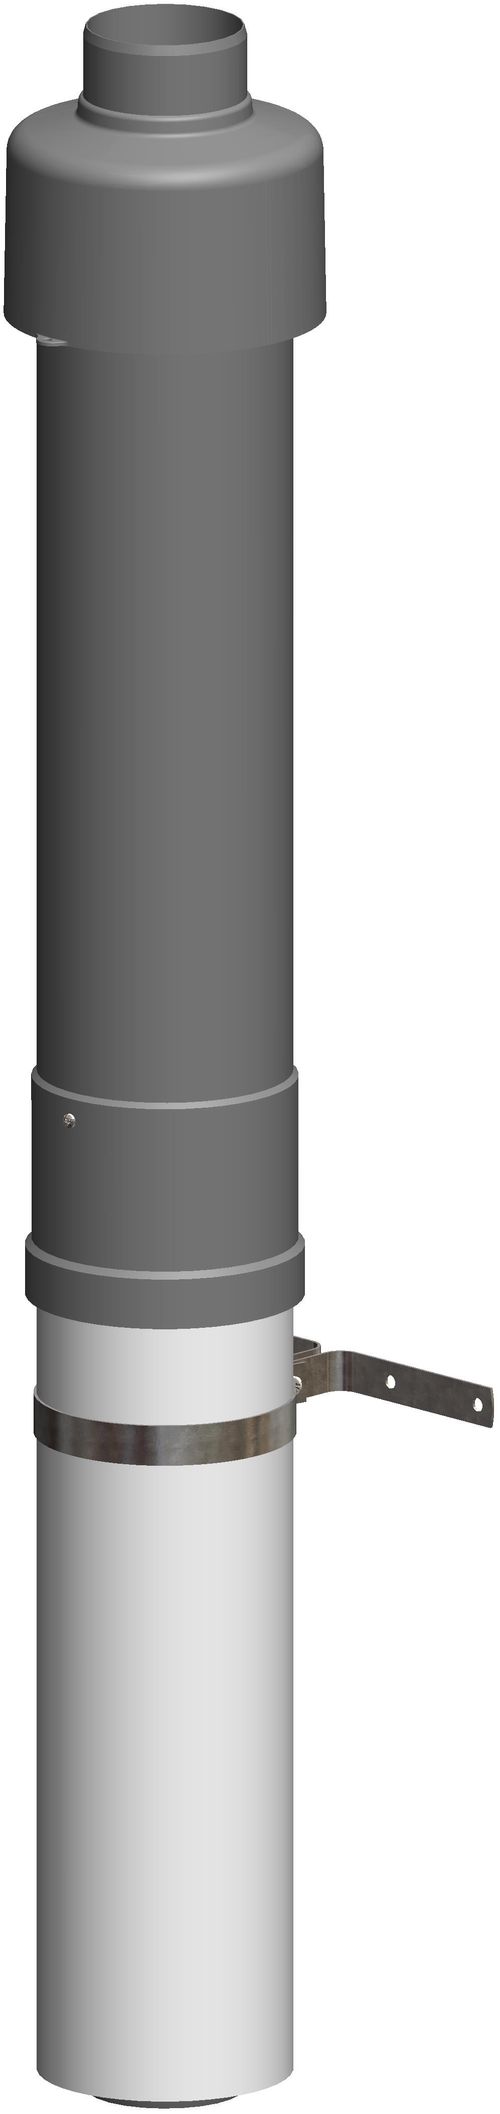 ATEC-Dachhochfuehrung-DN80-125-L650mm-fuer-WhitePoly-konzentrisch-schwarz-711758